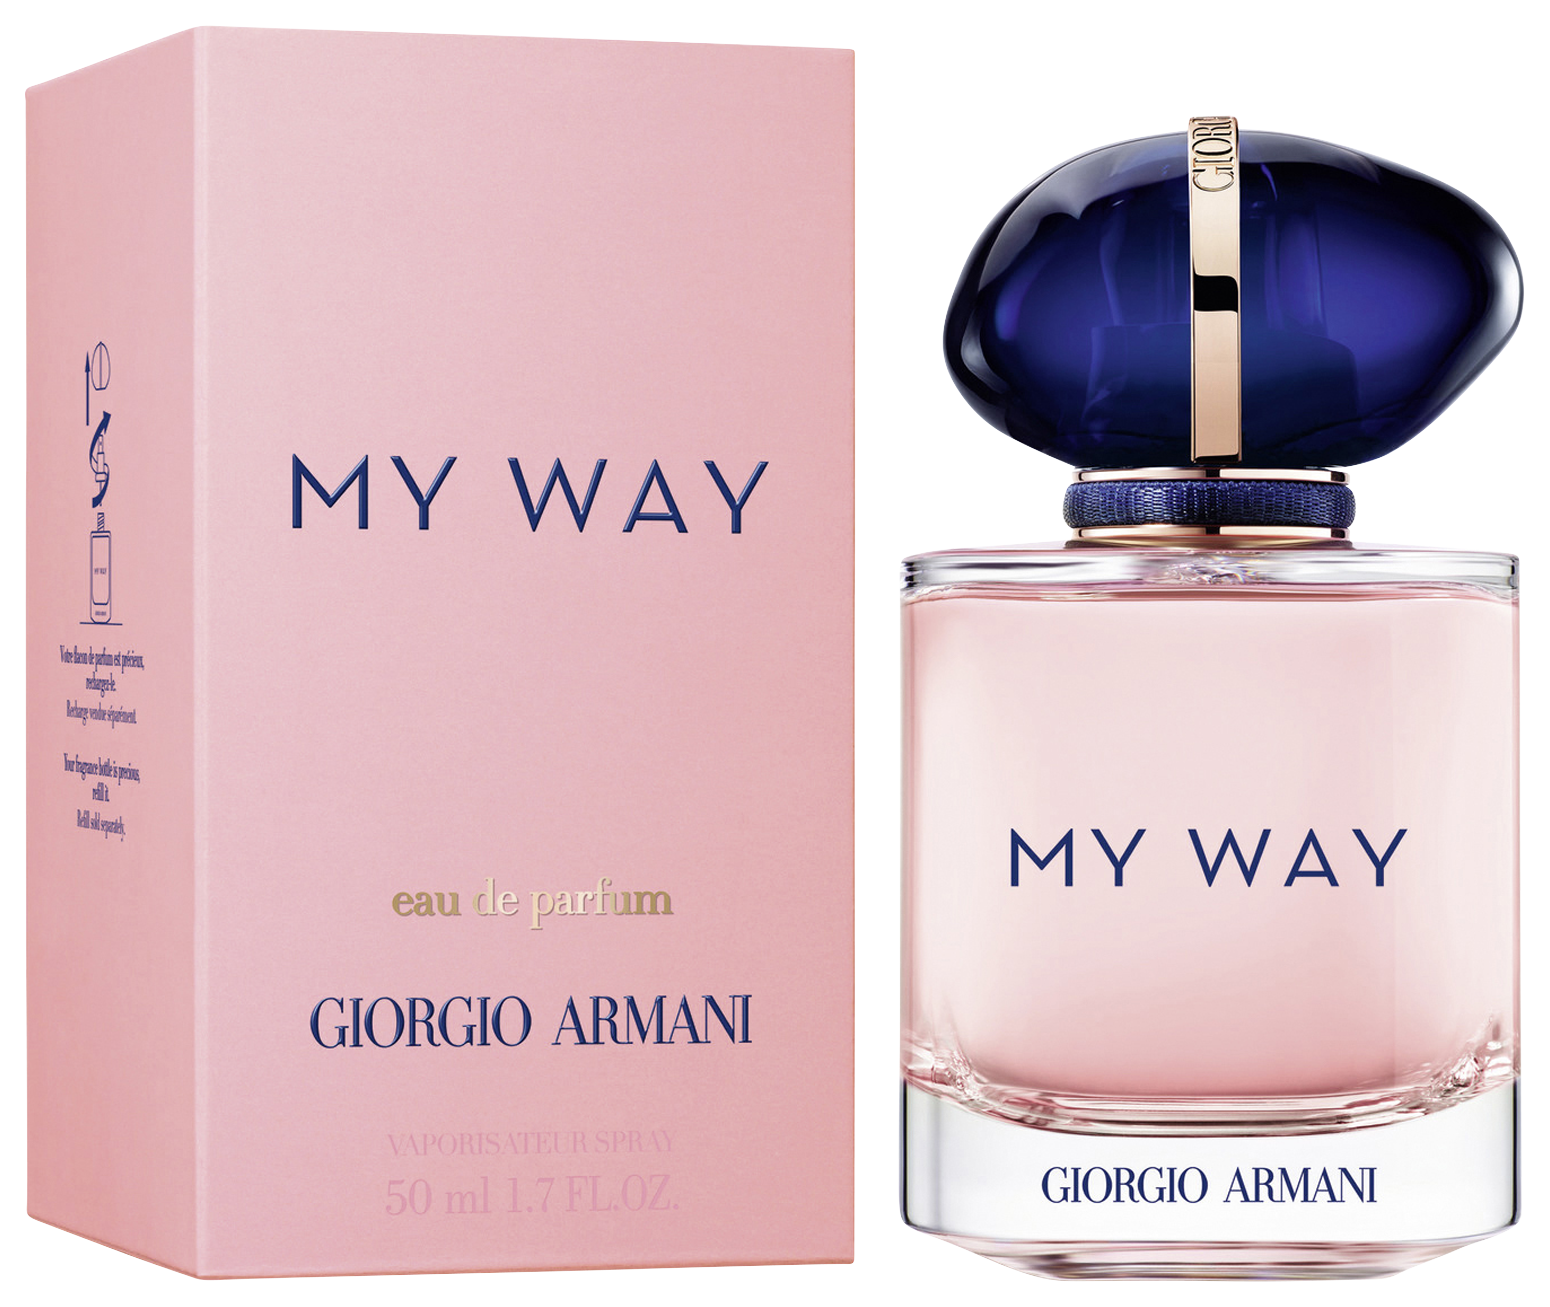 Giorgio Armani My Way Eau de Parfum (refillable) 50 ml